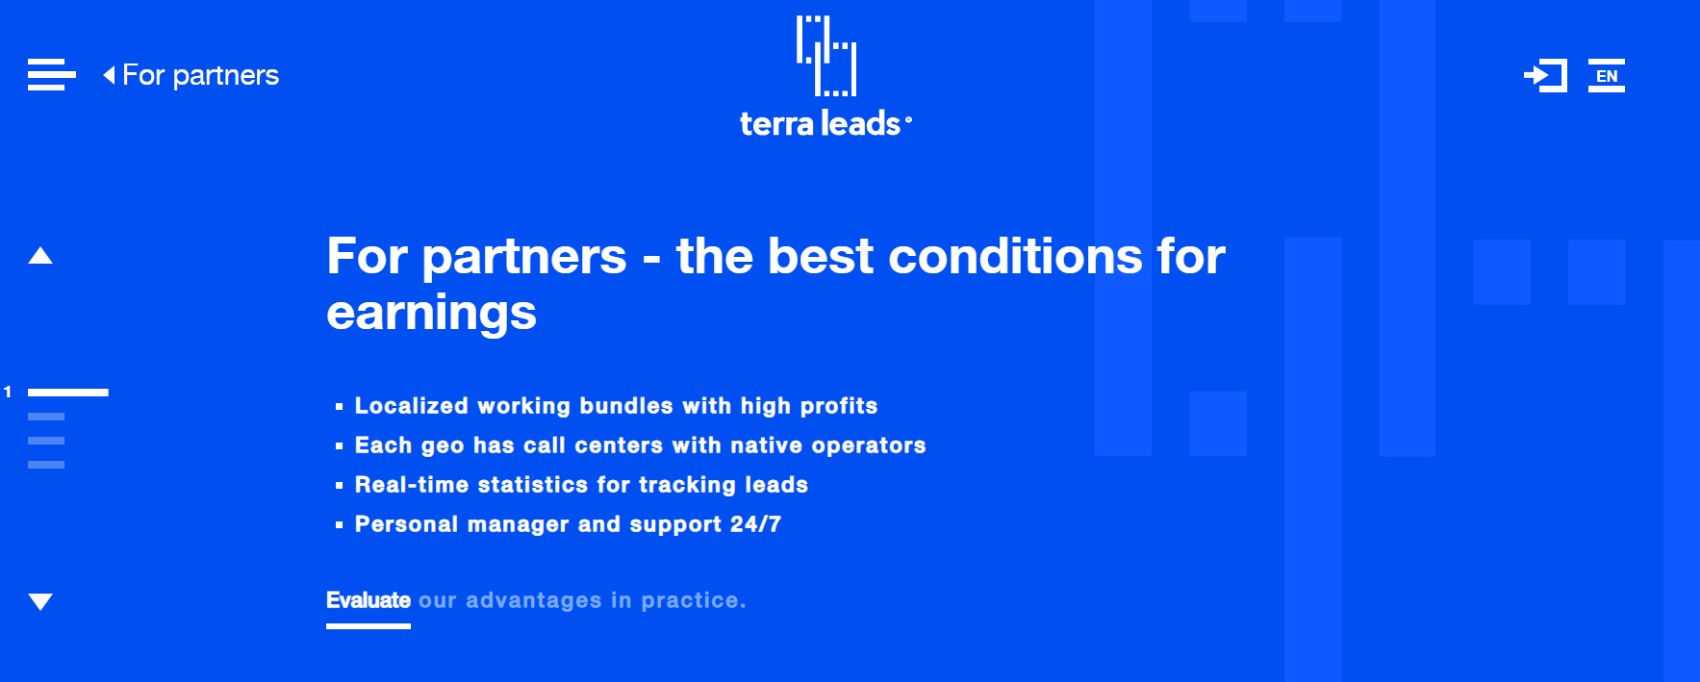 TerraLeads For Partners